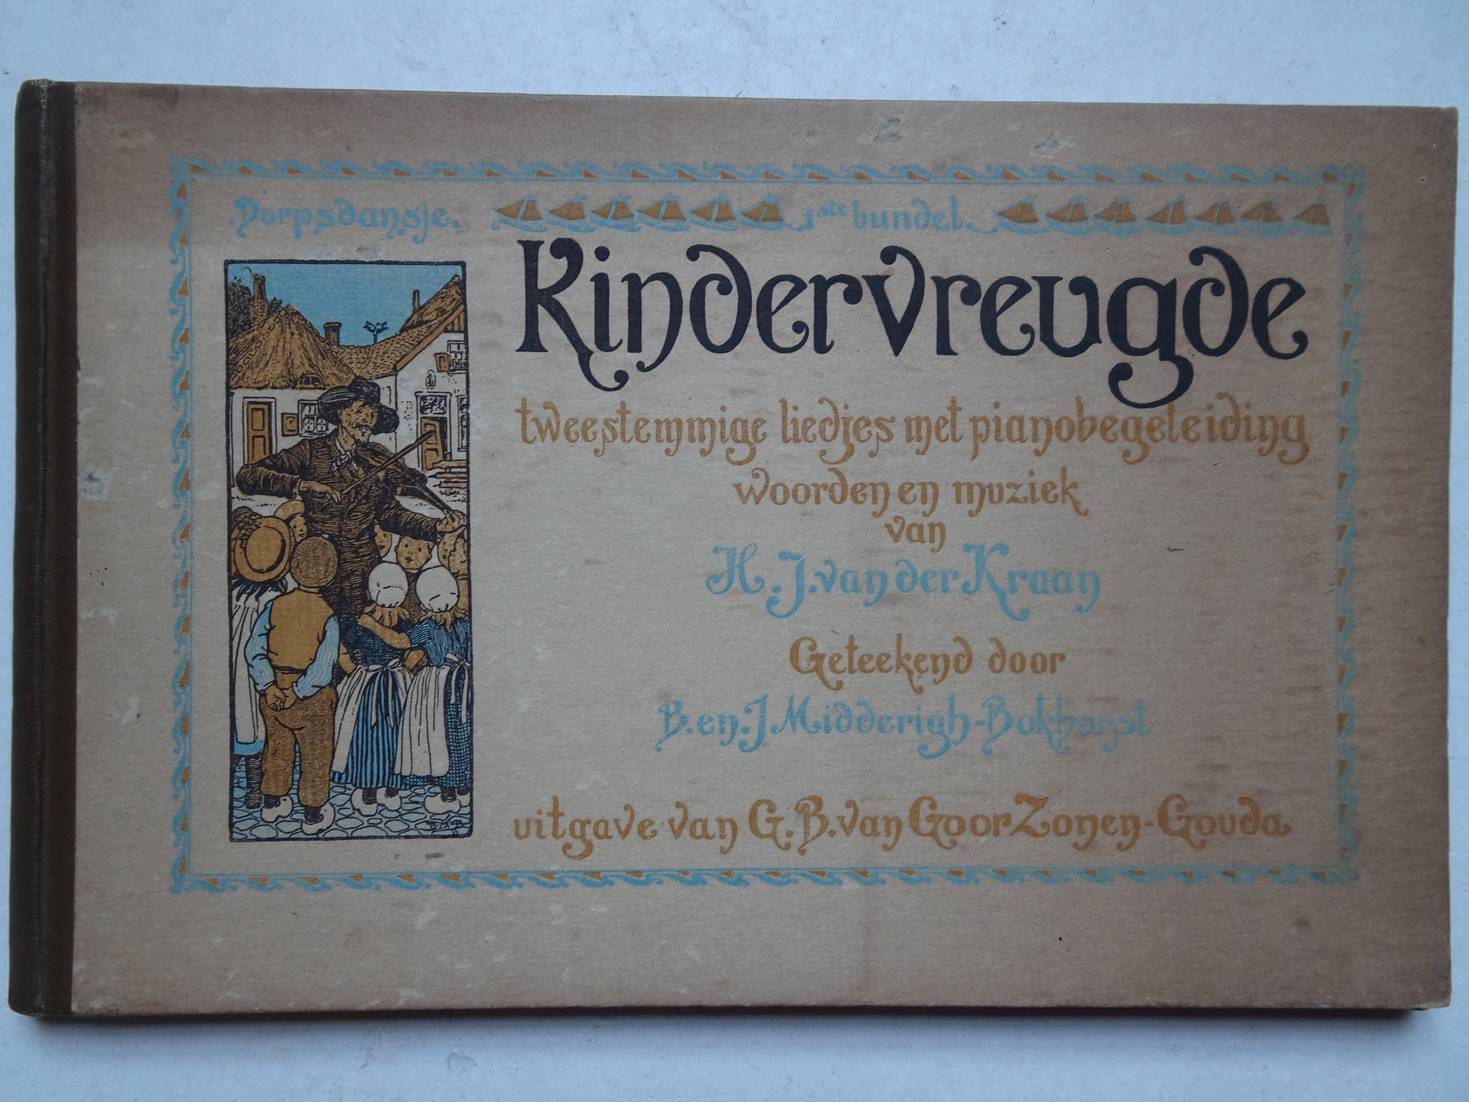 Kraan, H.J. van der & B. en J. Midderigh-Bokhorst. - Kindervreugde. Tweestemmige liedjes met pianobegeleiding, woorden en muziek.